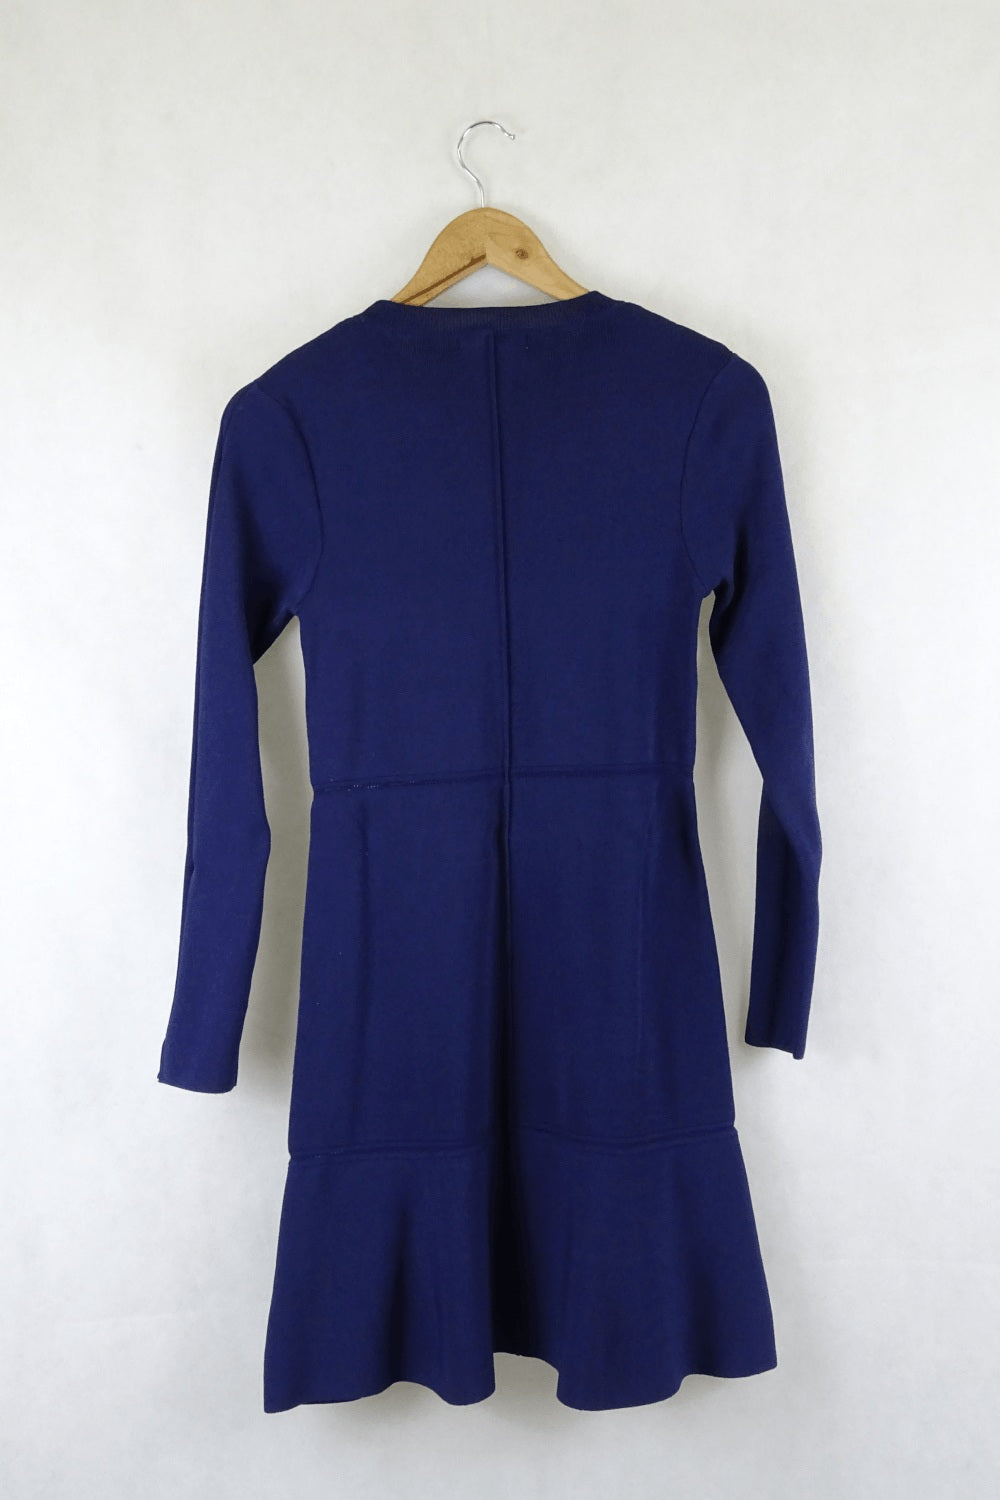 Zara Blue Knit Dress L